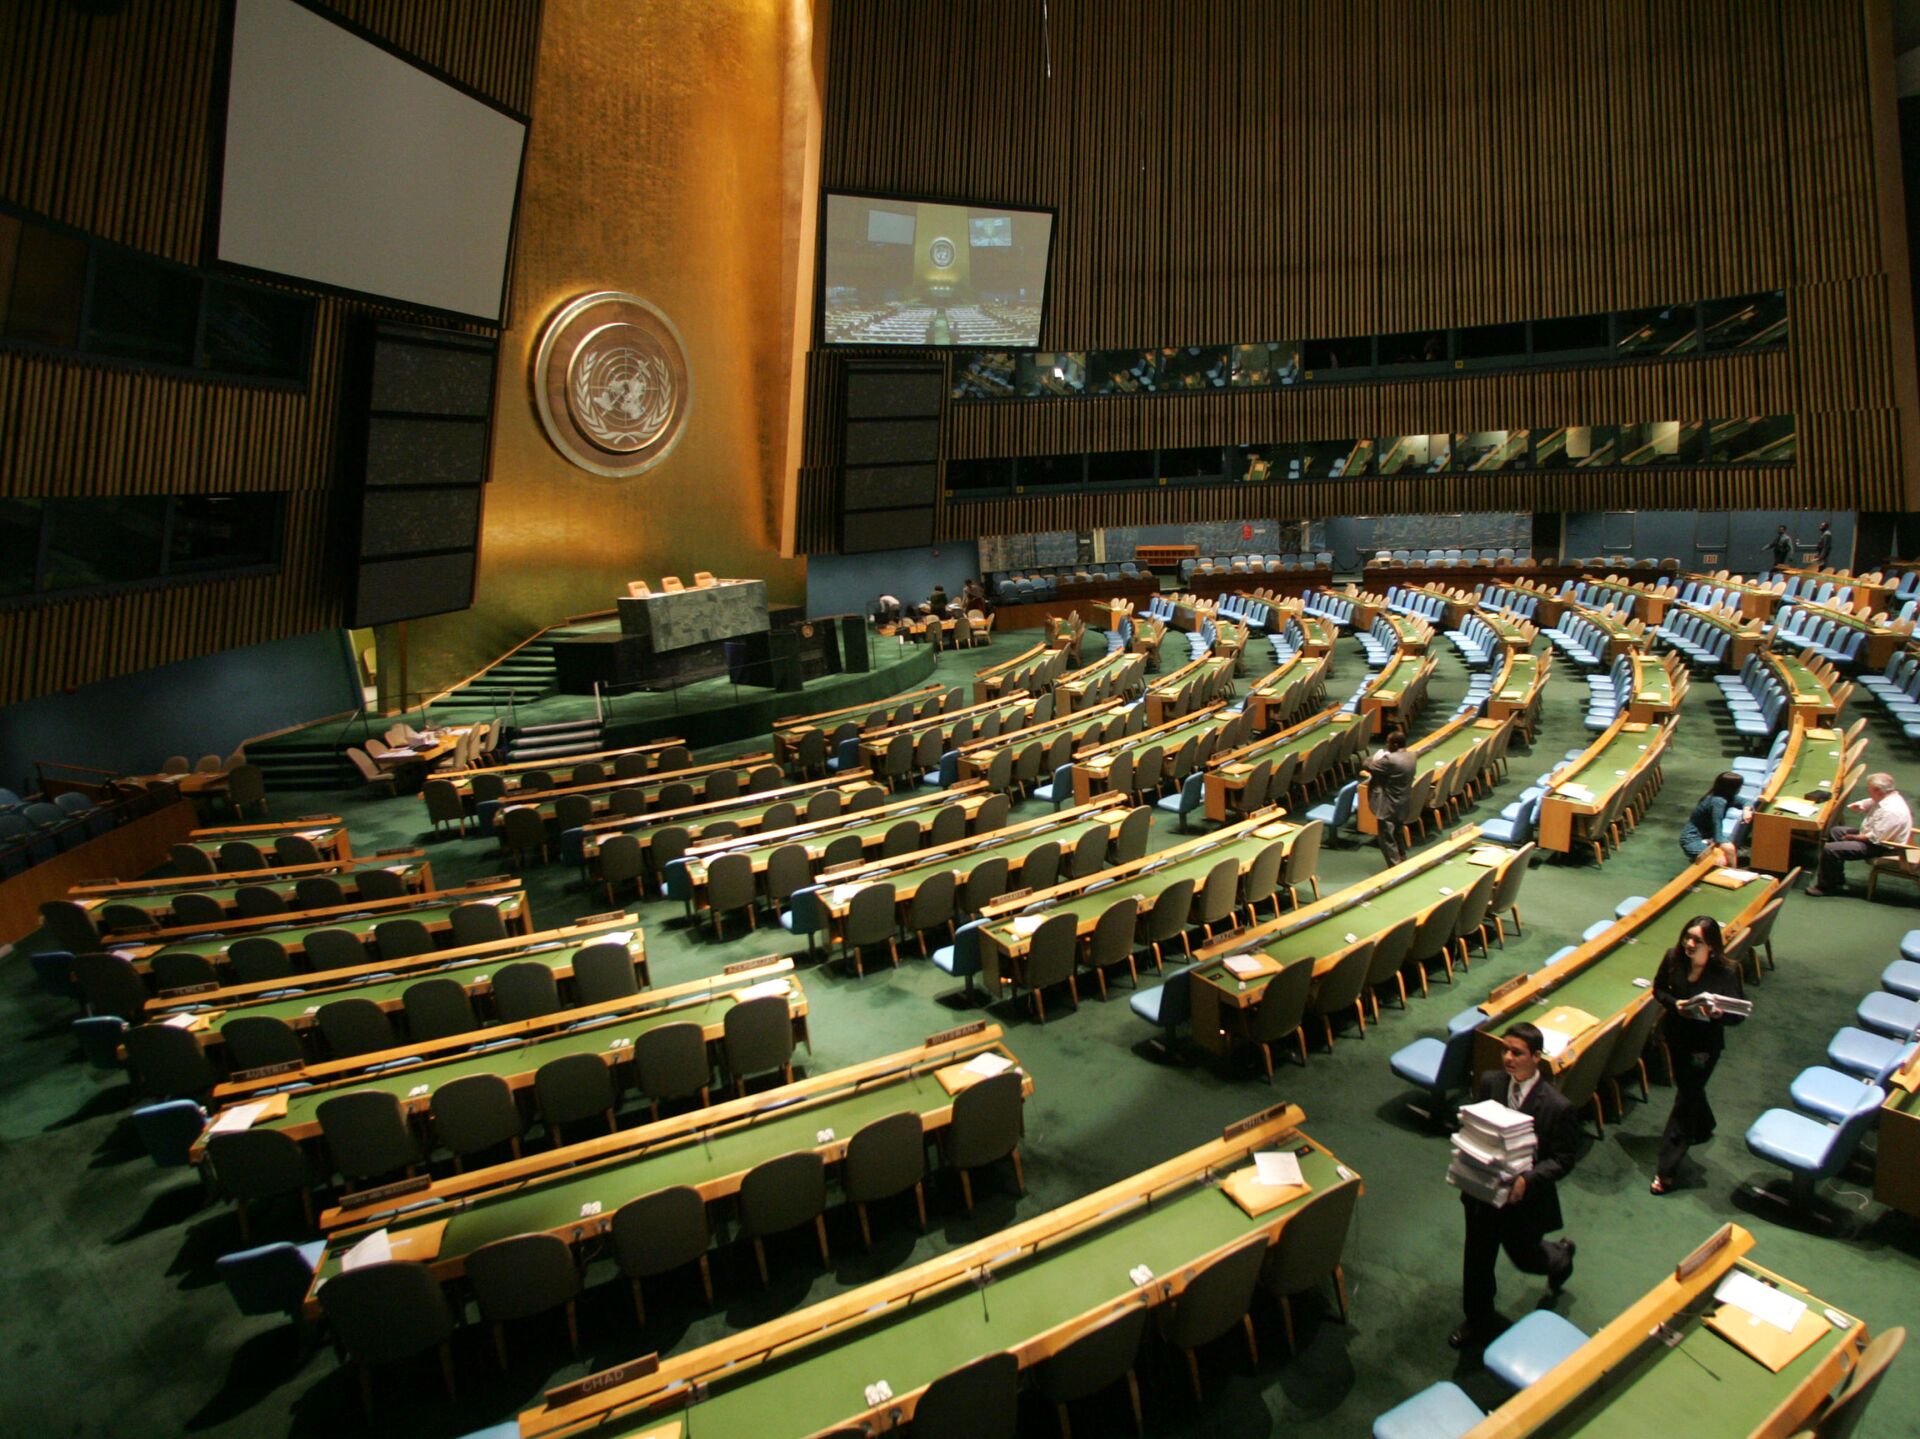 Ассамблея оон резолюции. Зал Генеральной Ассамблеи ООН. Зал заседания Генассамблеи ООН трибуна. Генеральная Ассамблея ООН 2022. Зал Генеральной Ассамблеи ООН В Нью-Йорке.